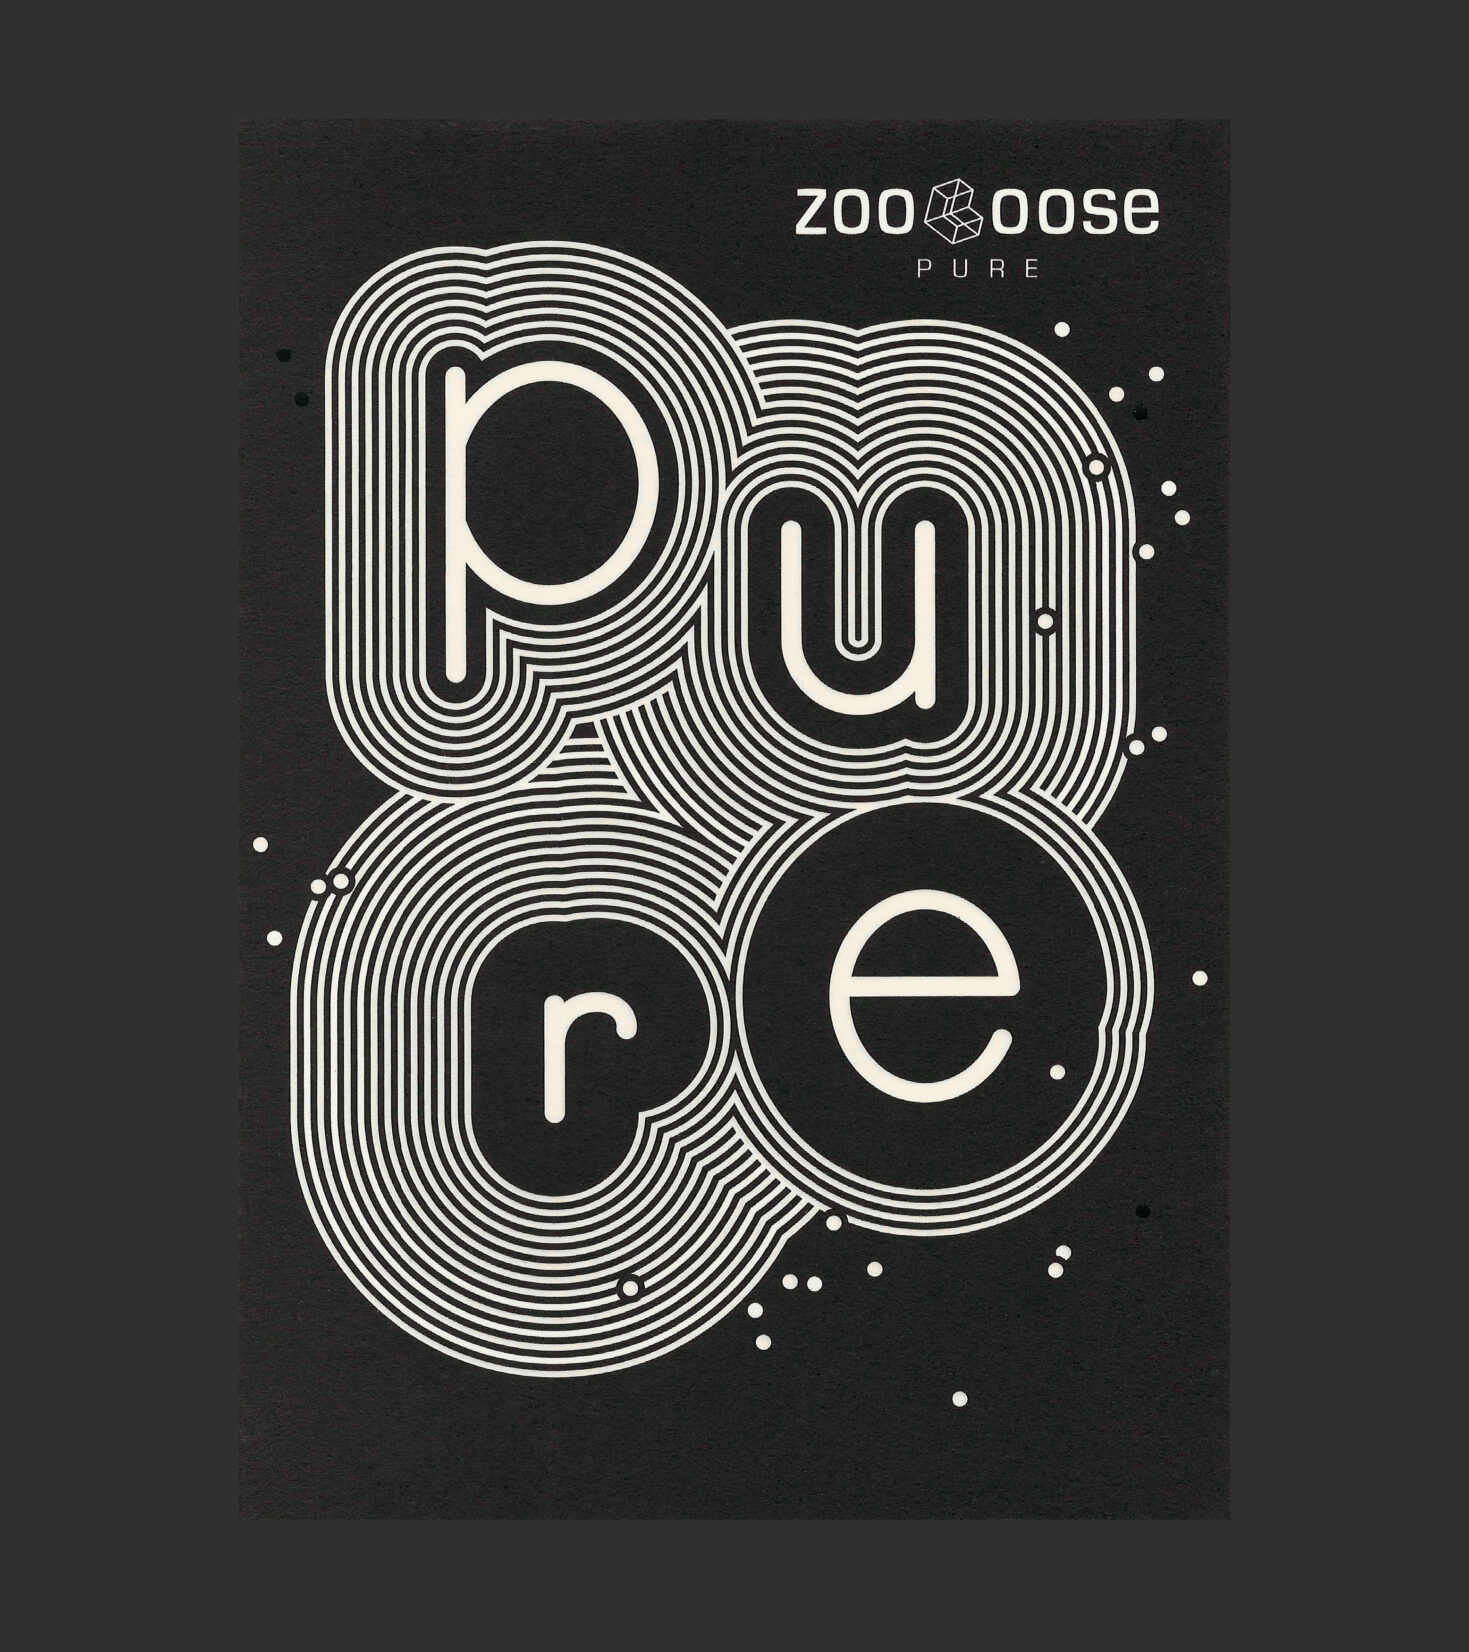 Postkartengestaltung für Zooloose Pure von Grafikdesign Cueni Basel.